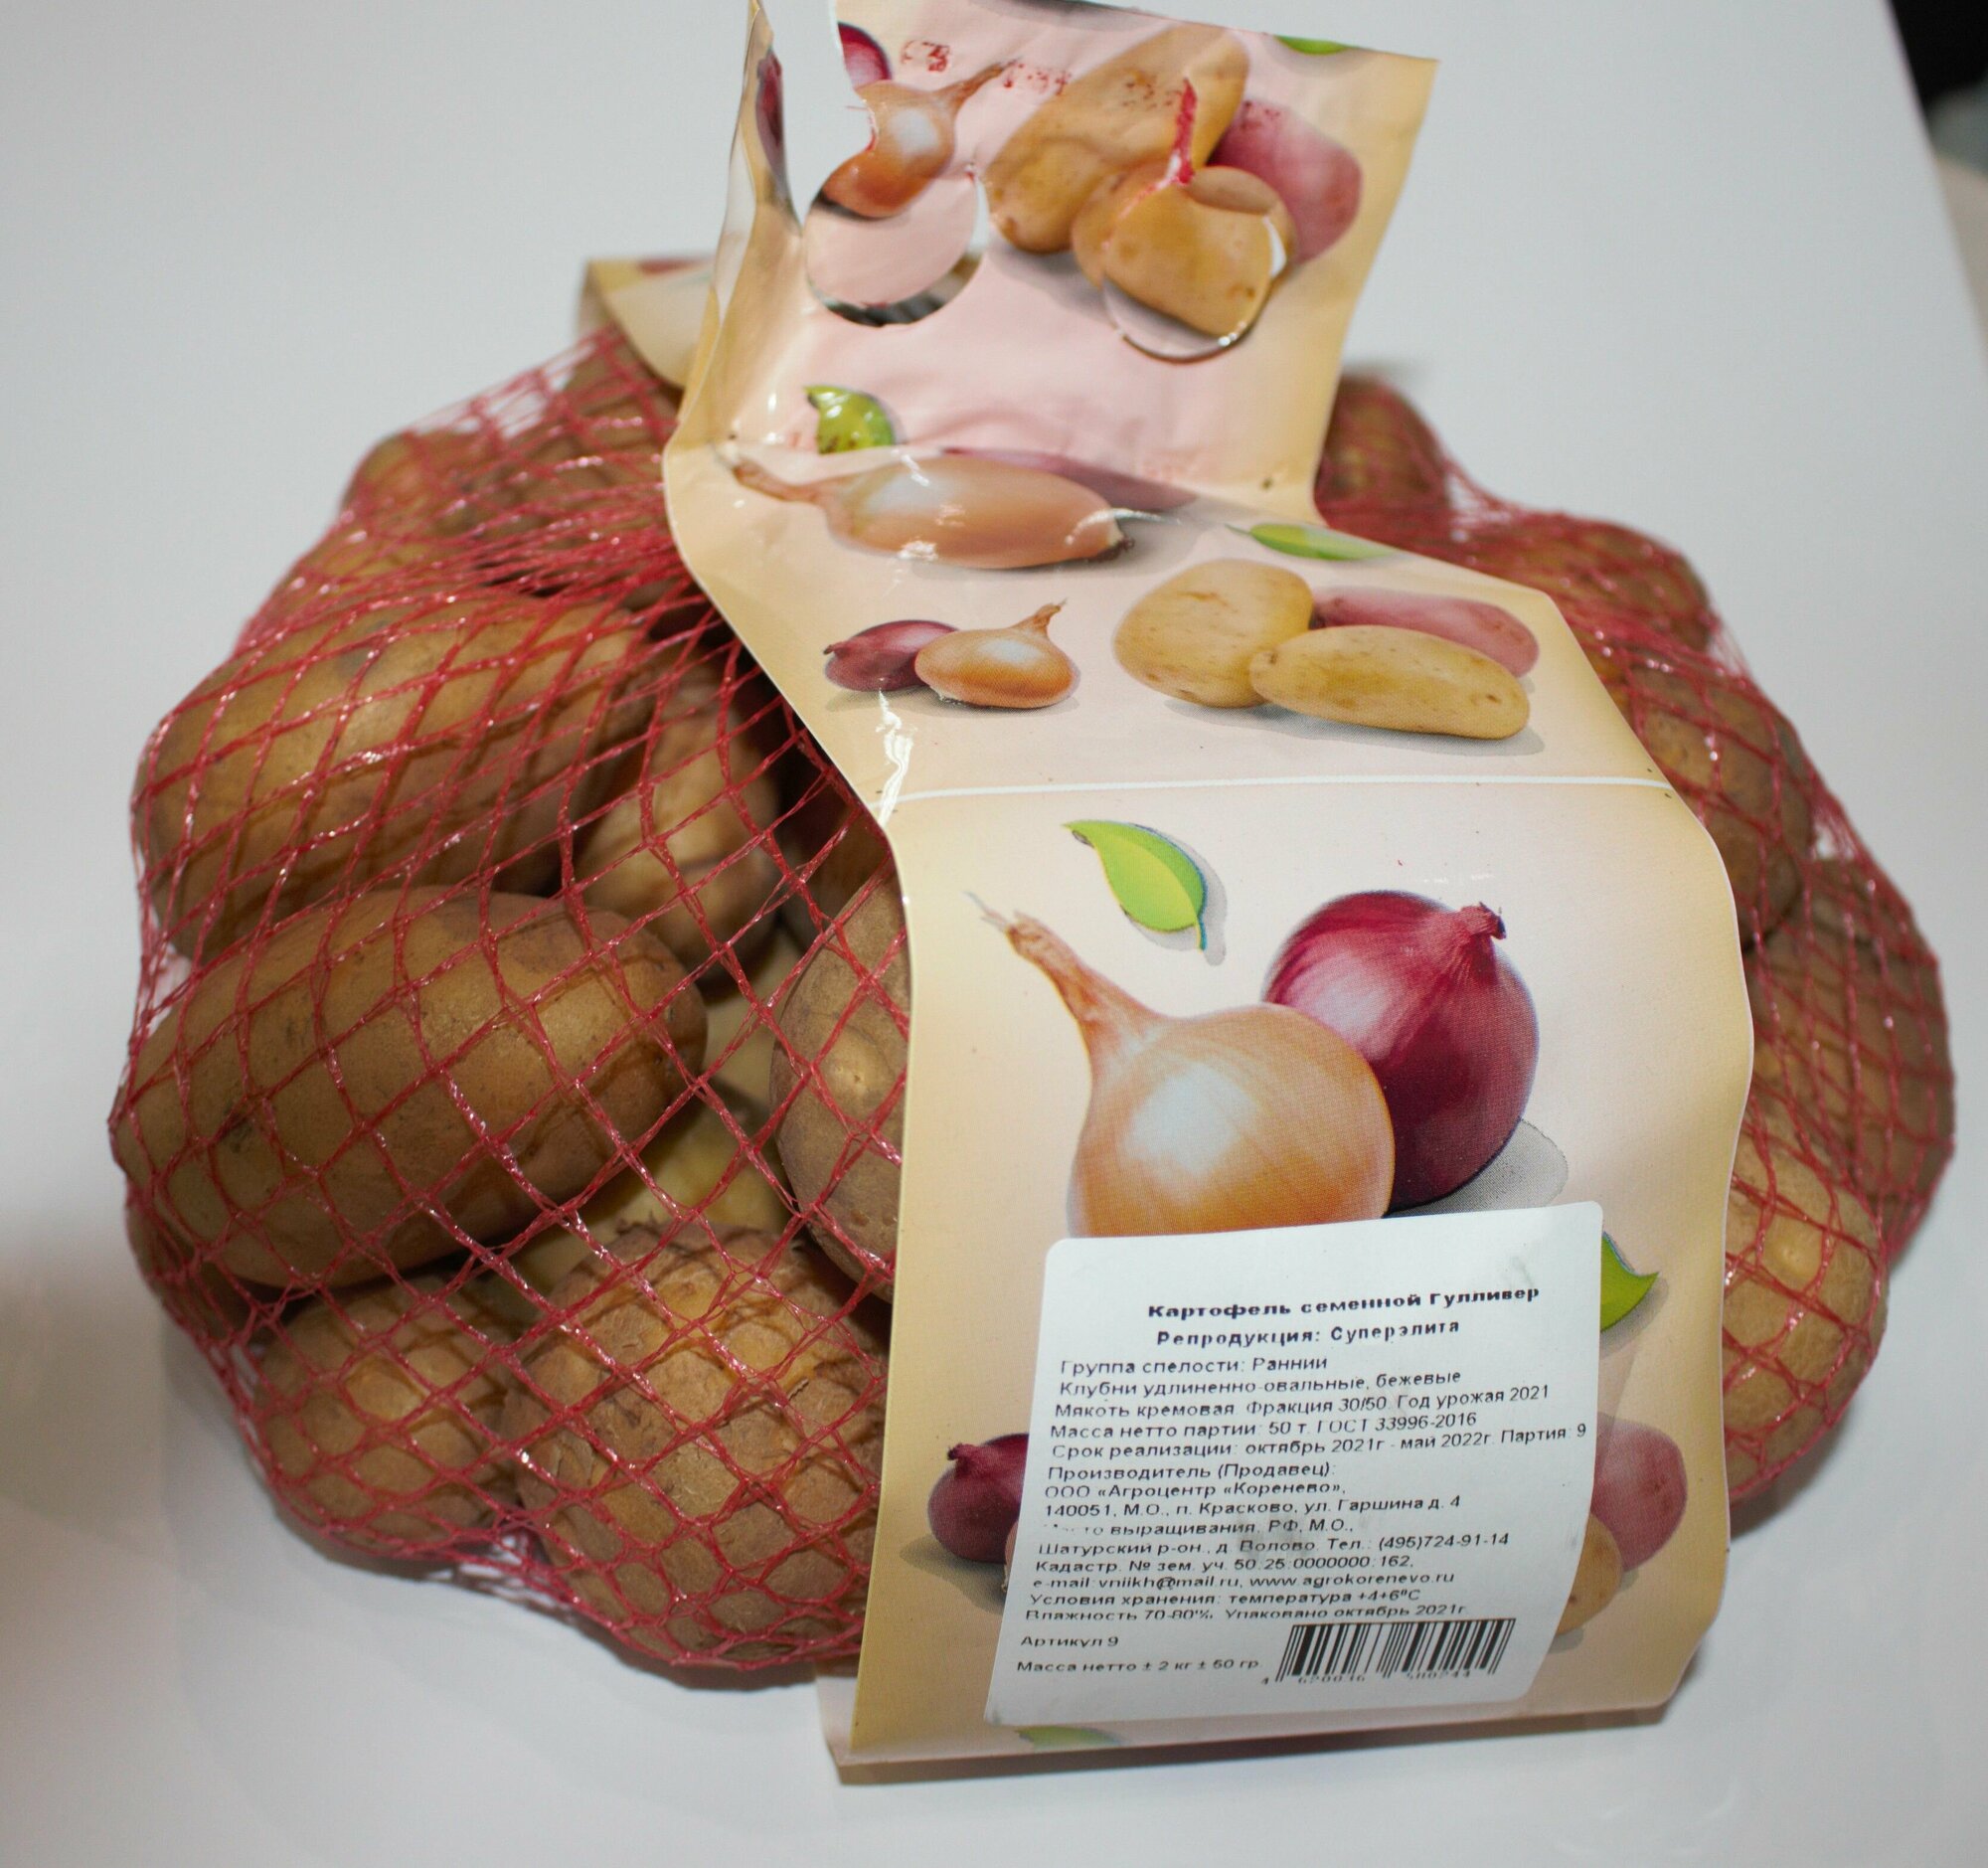 Картофель семенной флагман (суперэлита) (4 кг) мегаурожайный - фотография № 7